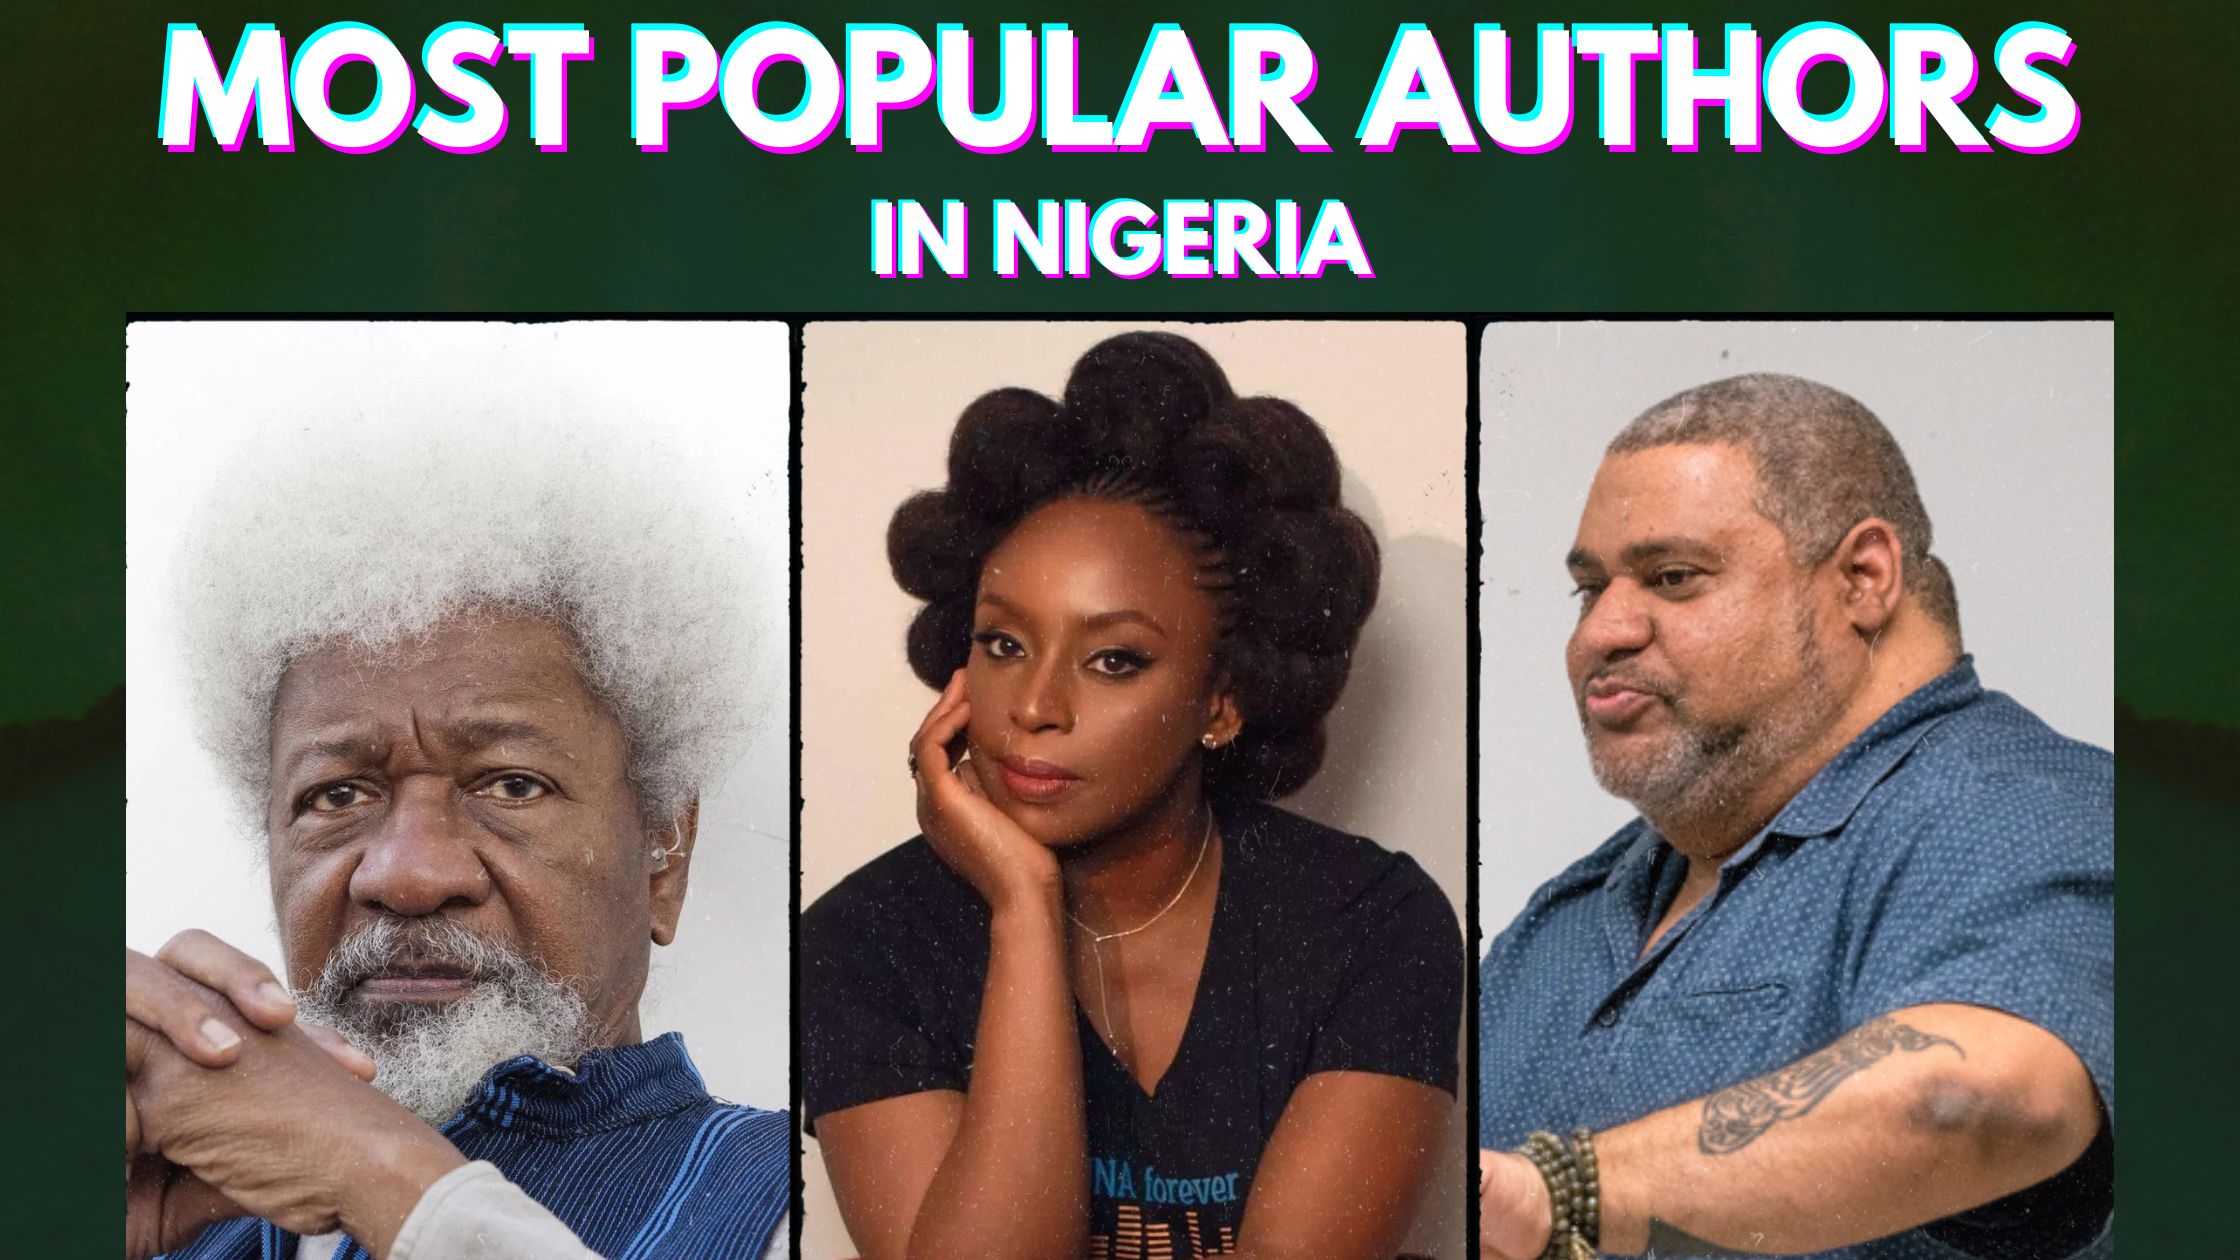 Top 10 Most Popular Authors in Nigeria